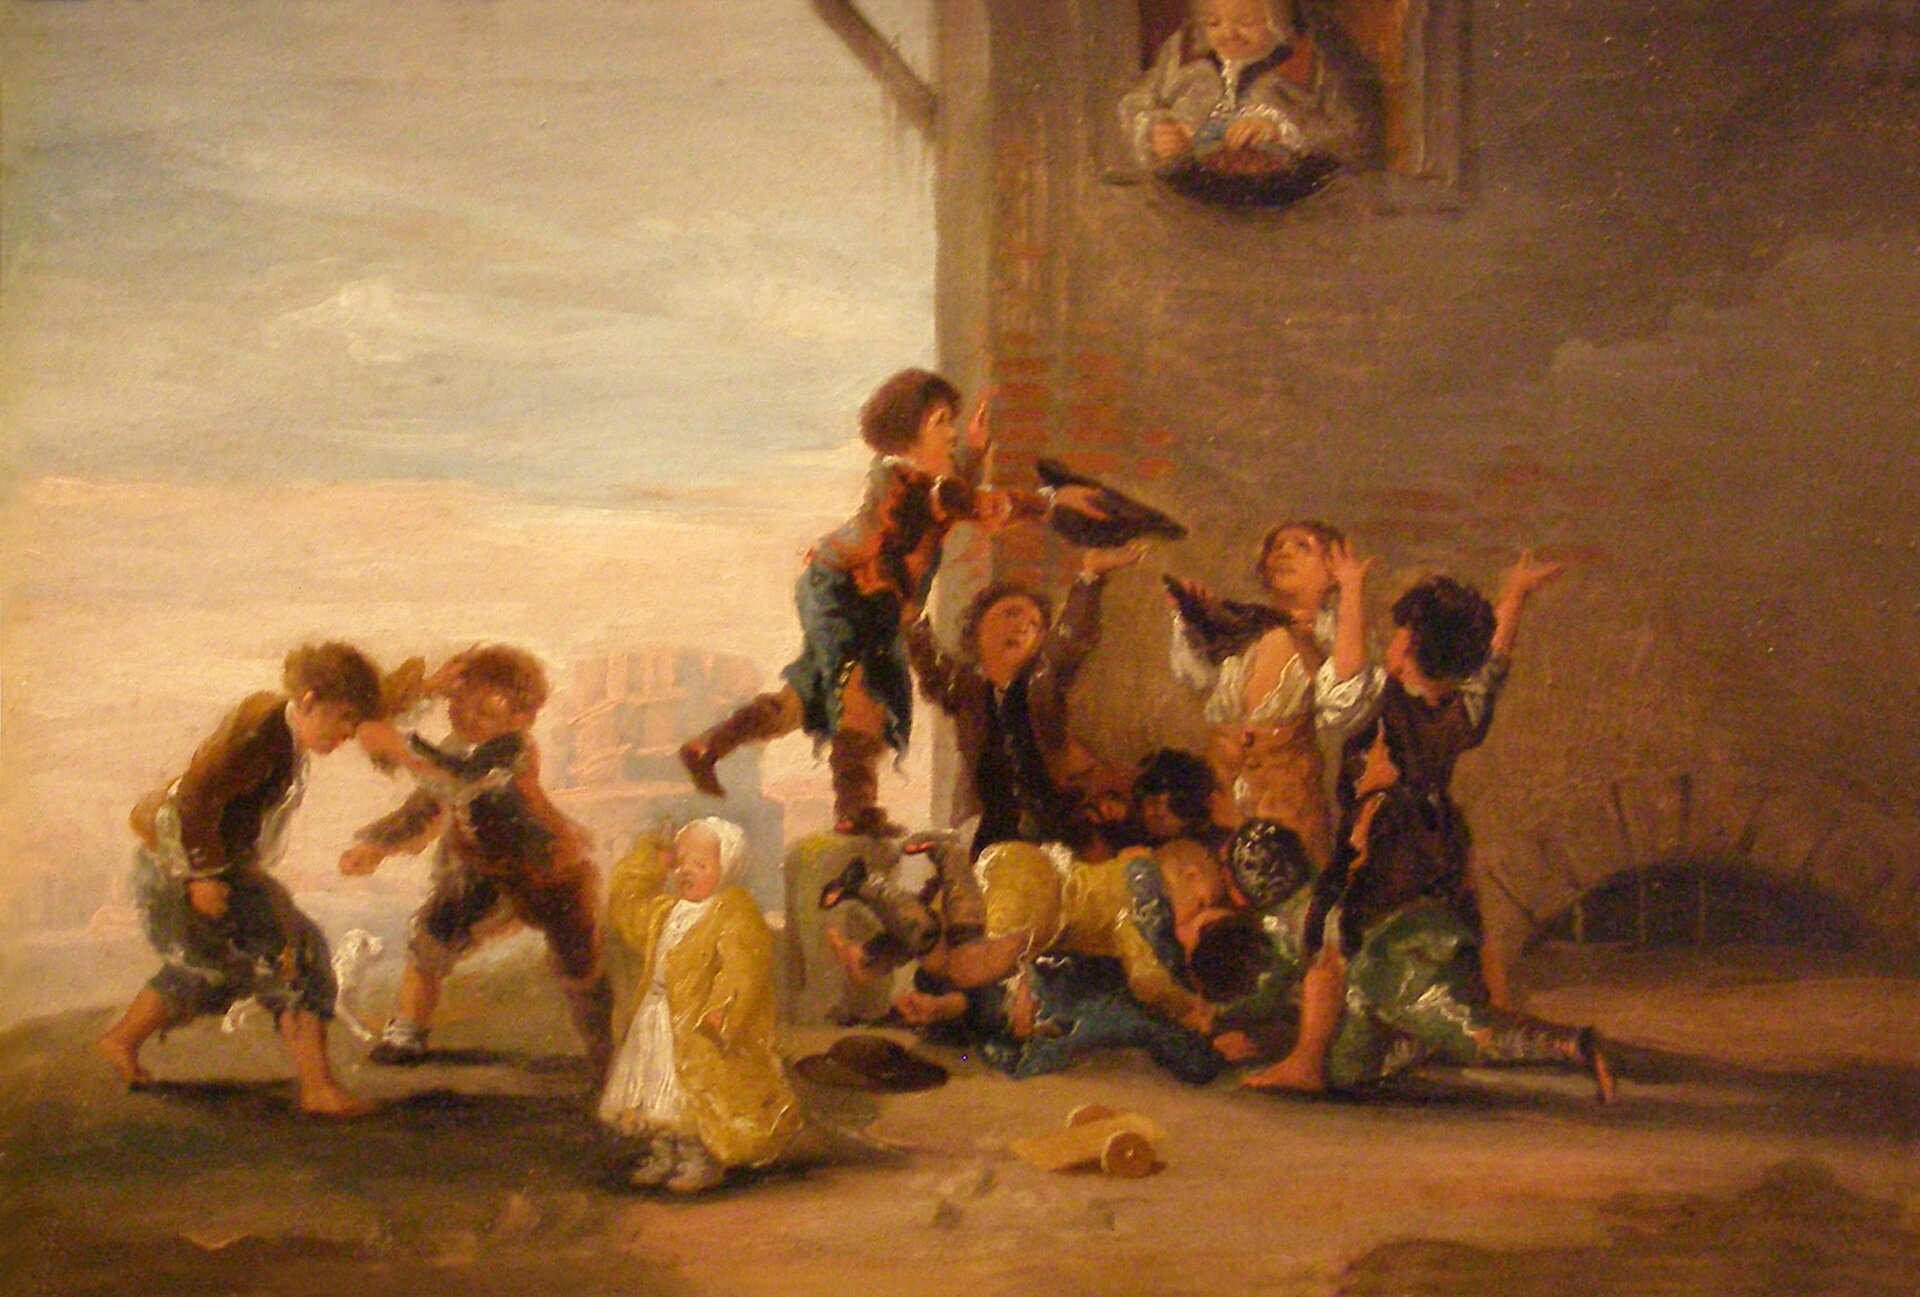 Zabawy dziecięce Dzieci bijące się o kasztany Źródło: Francisco Goya, Zabawy dziecięce, 1782–1785, domena publiczna.